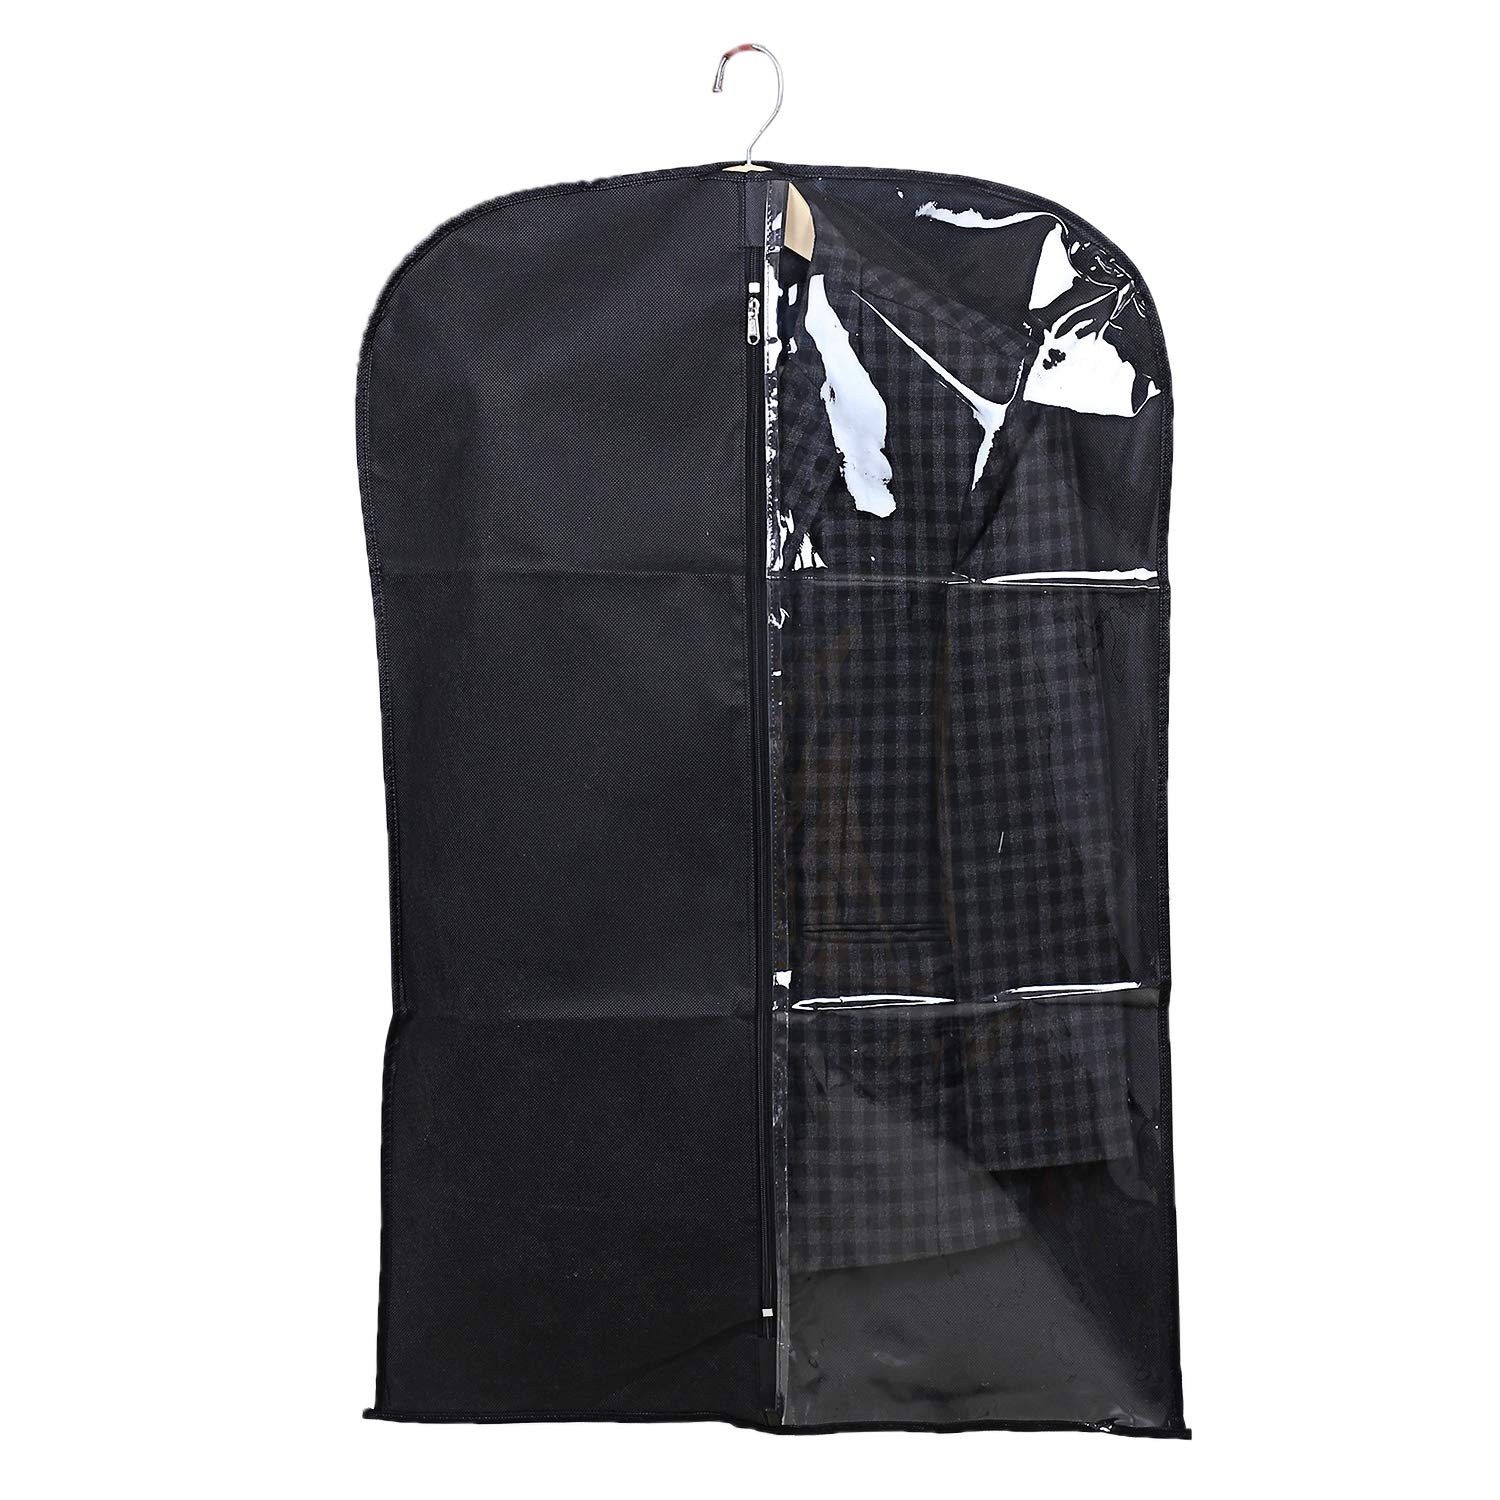 Kuber Industries Half Transparent Non Woven Men's Coat Blazer Suit Cover (Grey & Black & Royal Blue)  -CTKTC41501